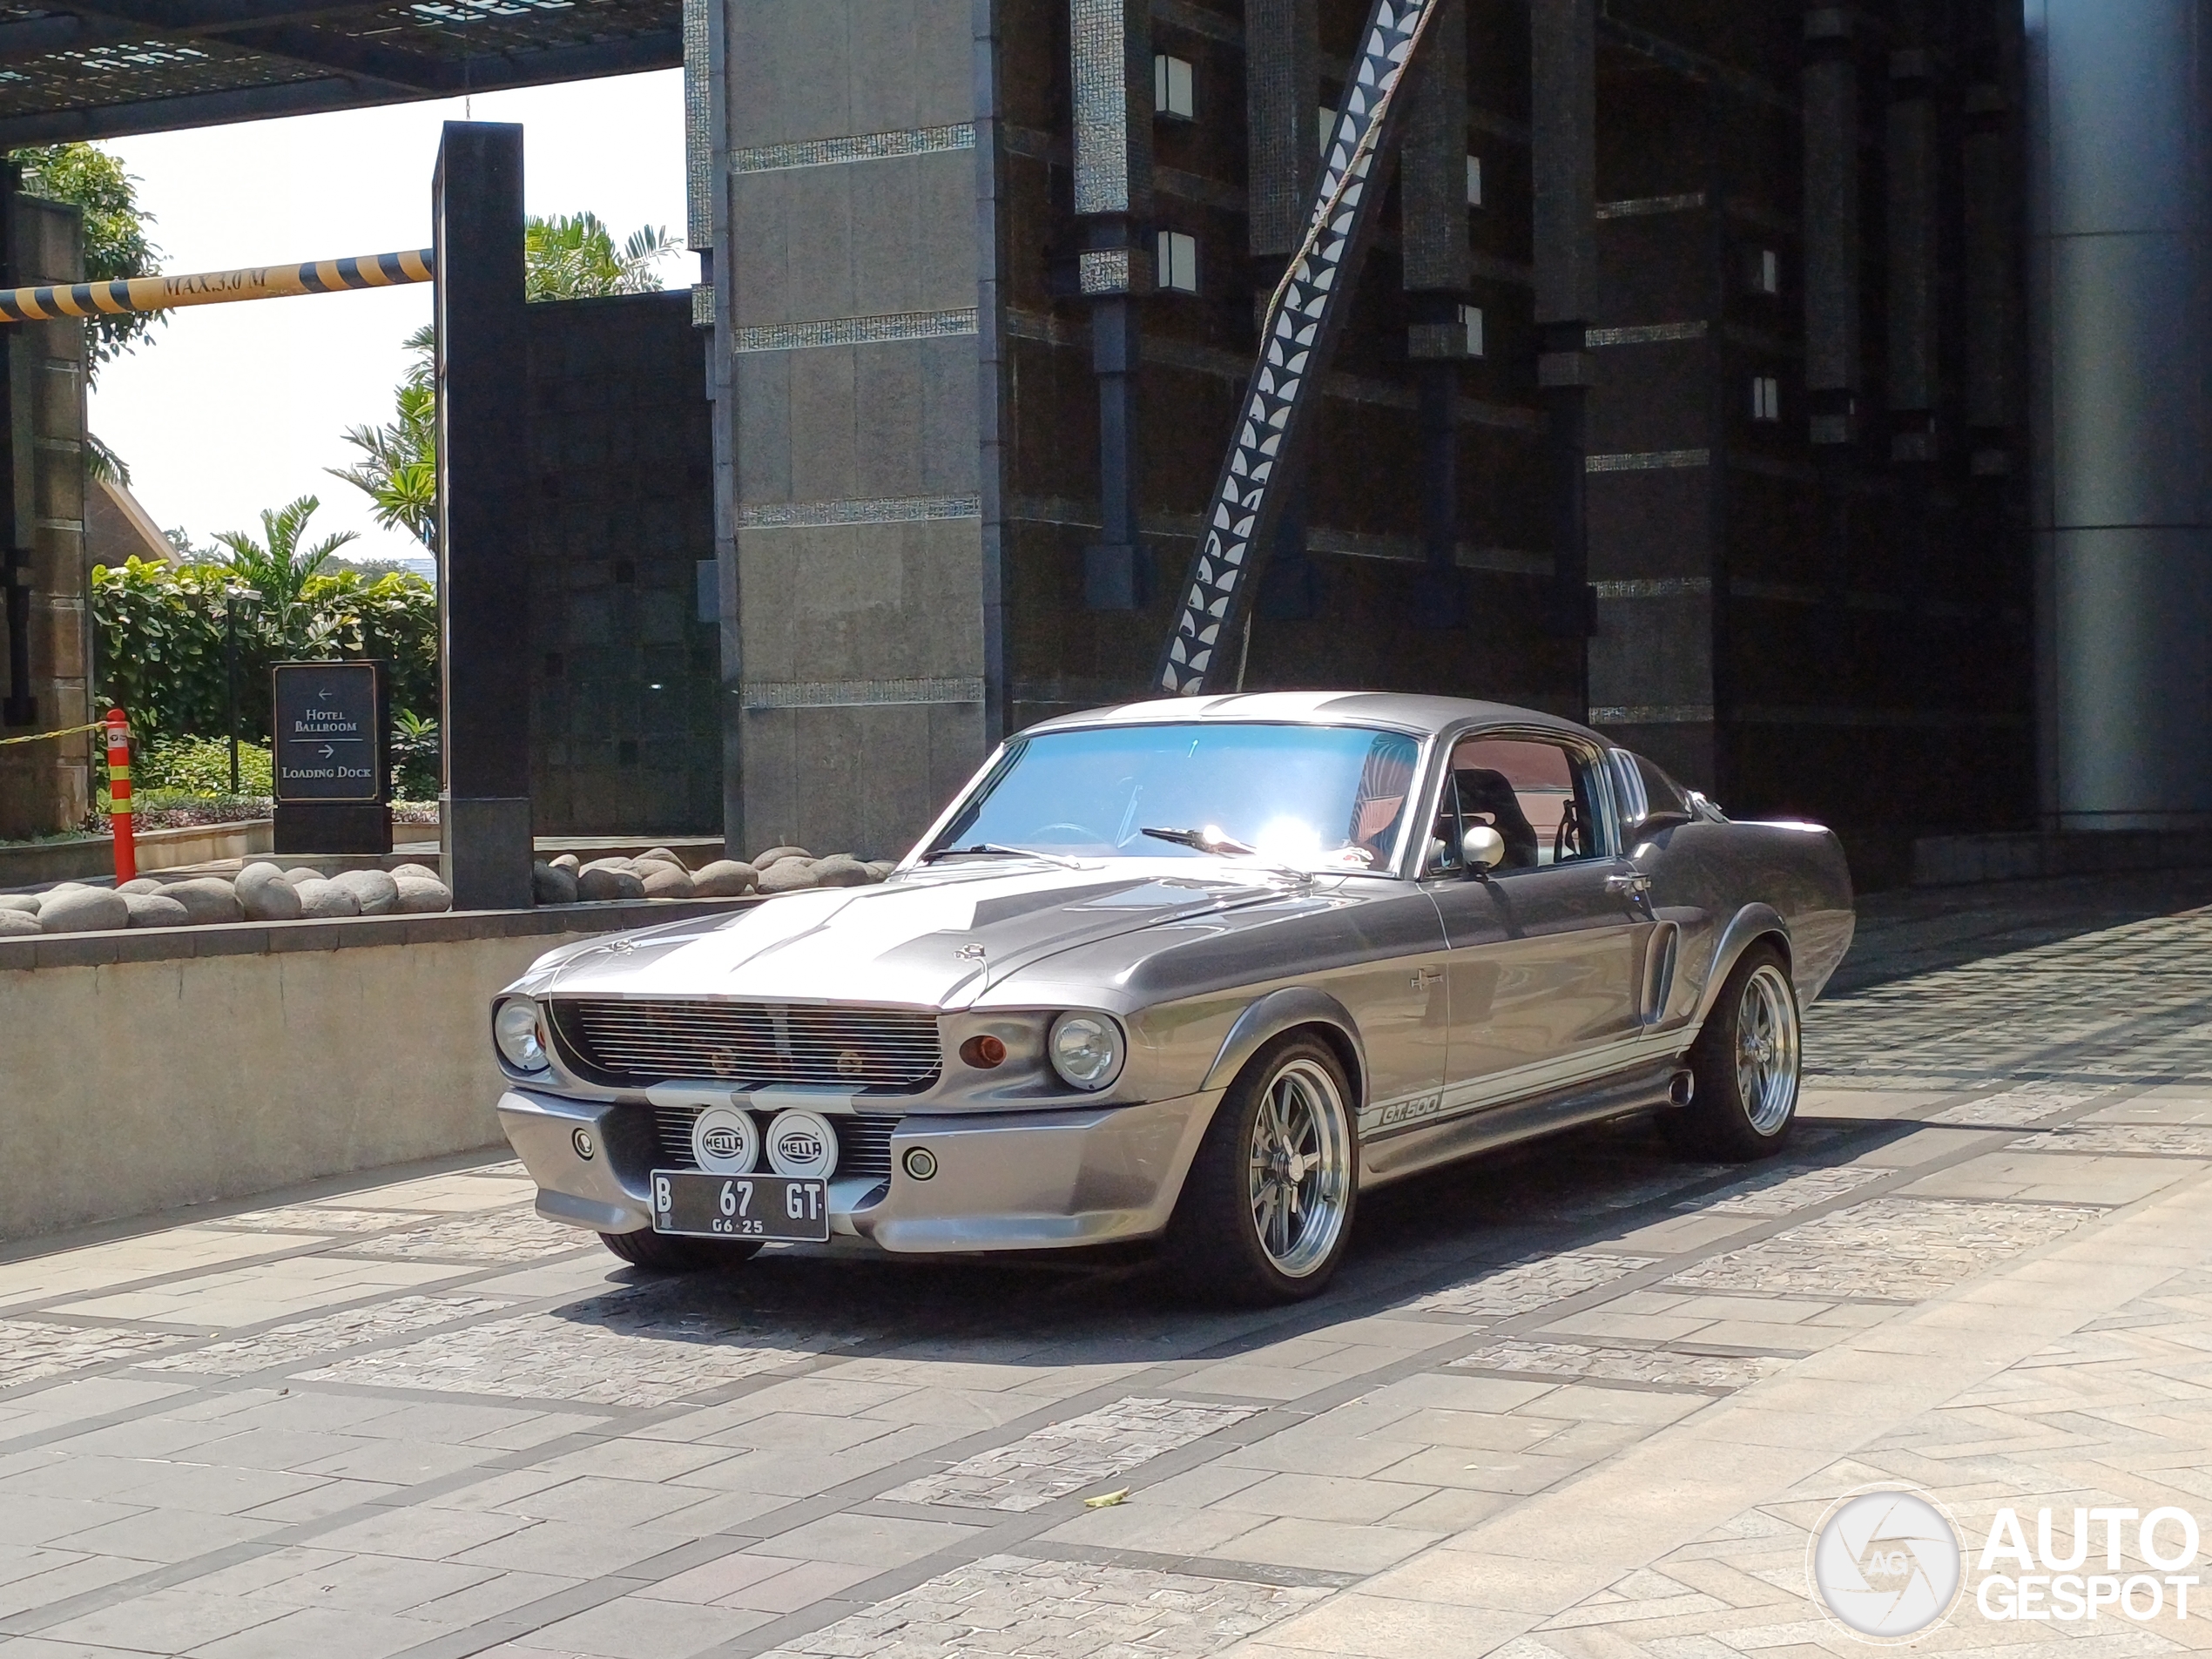 Ist dies der schönste Mustang aller Zeiten?